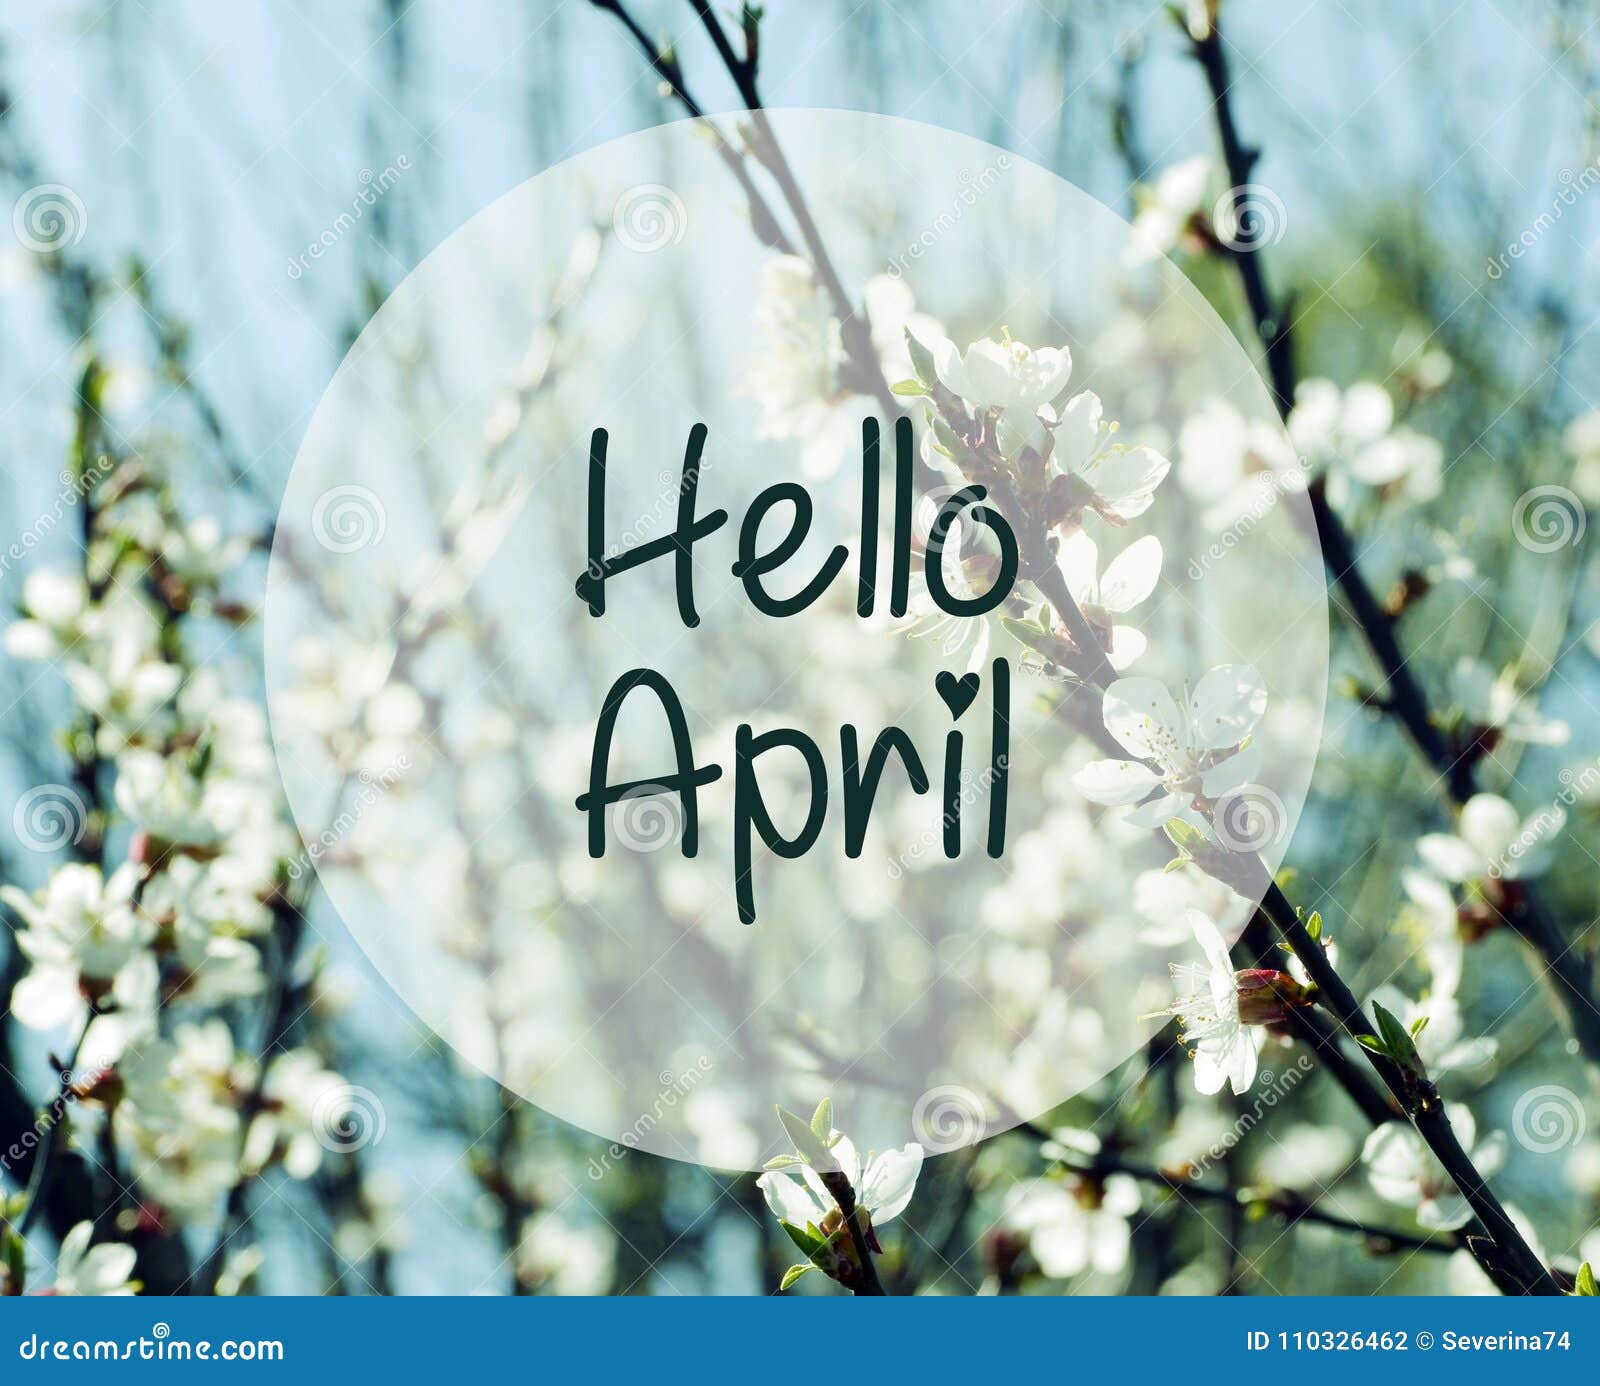 Привет апрель картинки с надписями. Здравствуй апрель. Здравствуй апрель фото. Да здравствует апрель картинки. Hello April.